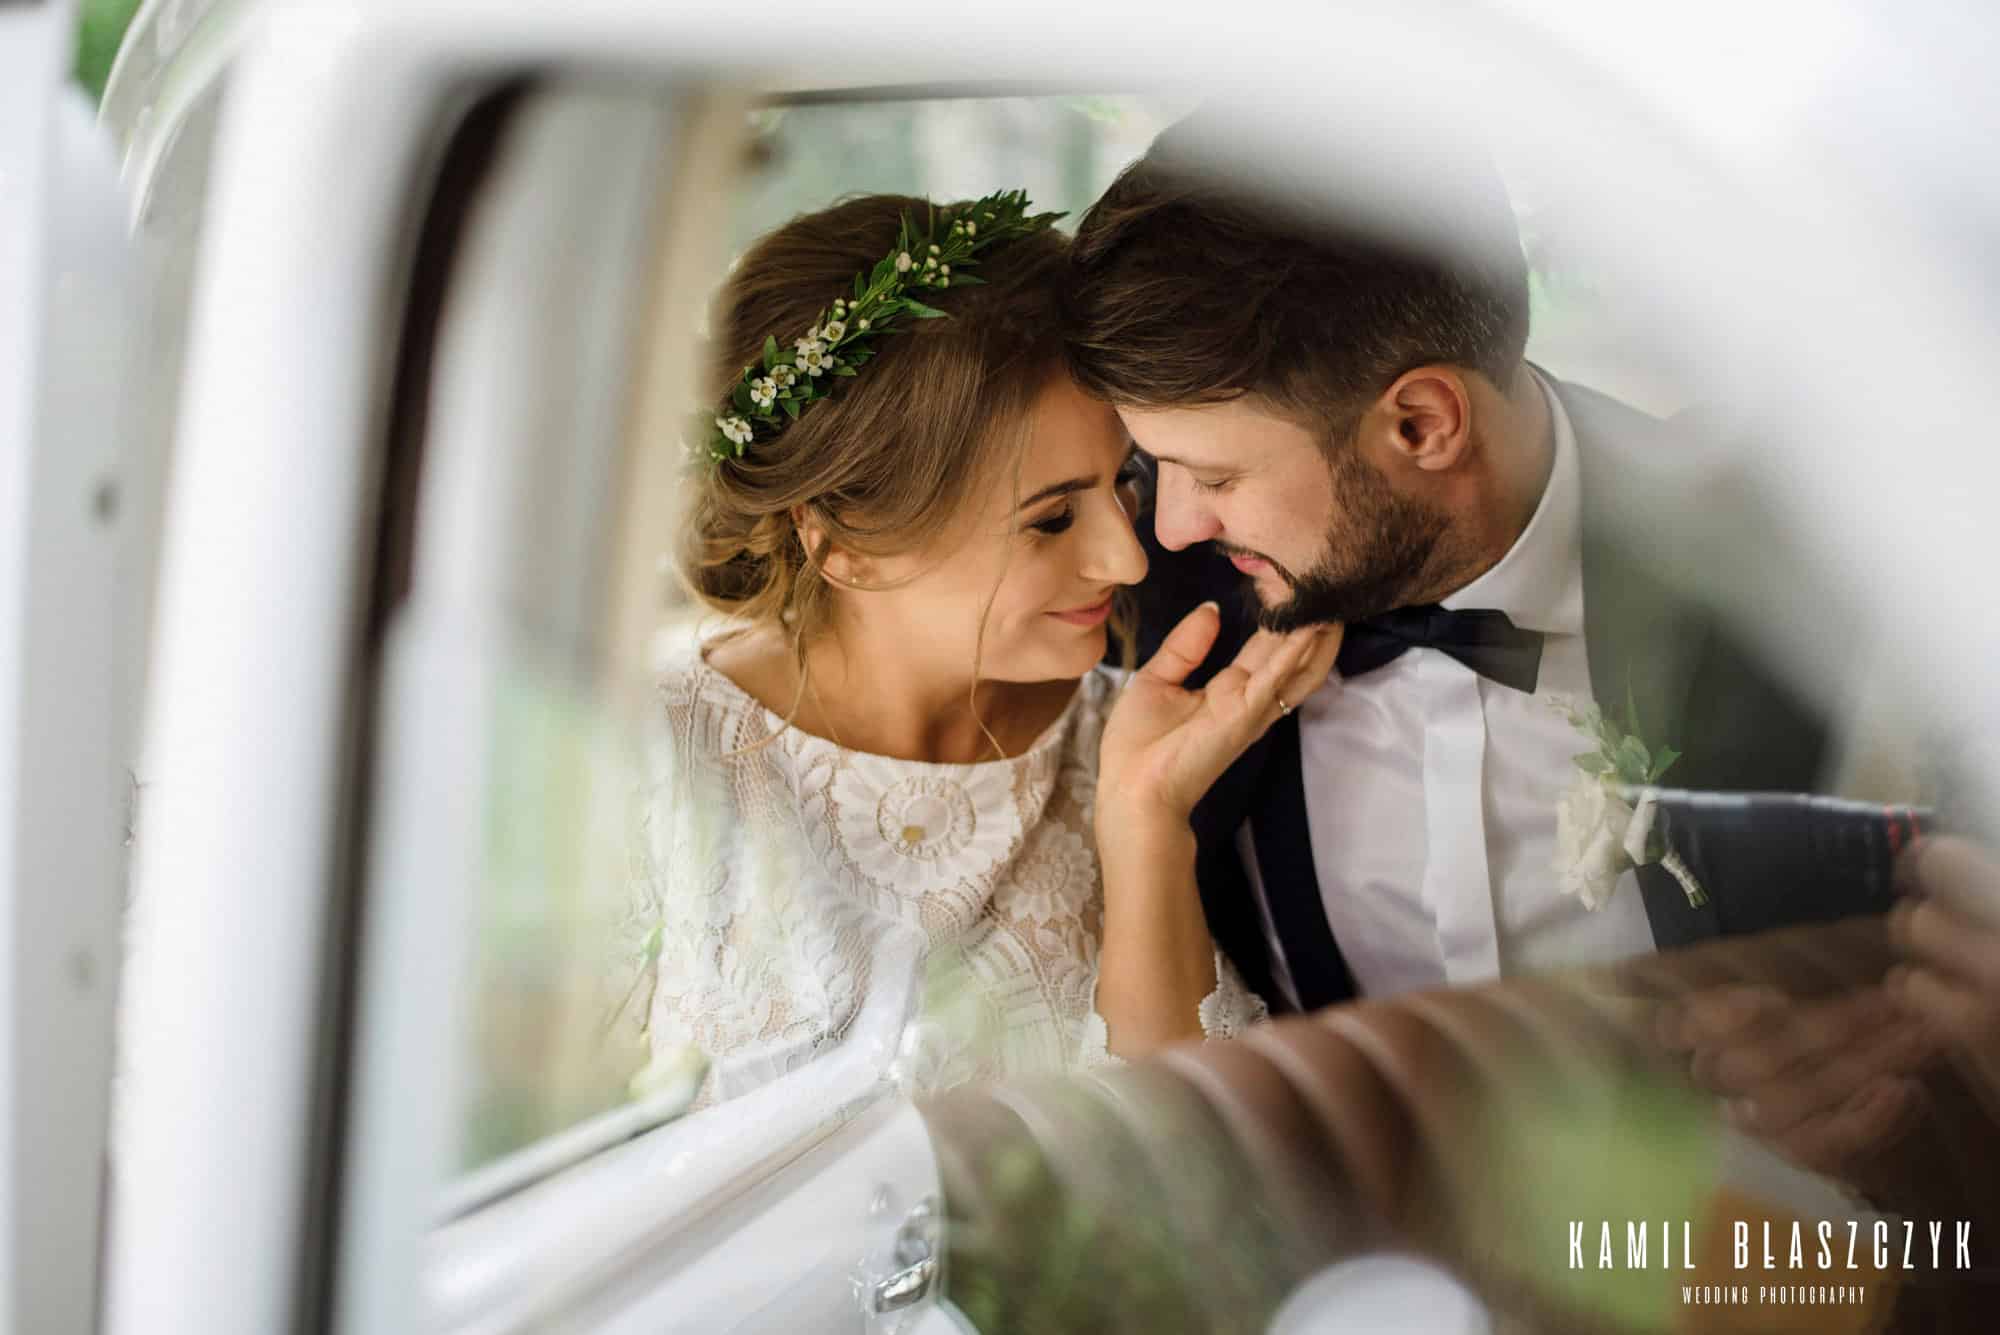 Marzena i Paweł podczas sesji w samochodzie, przed ceremonią zaślubin